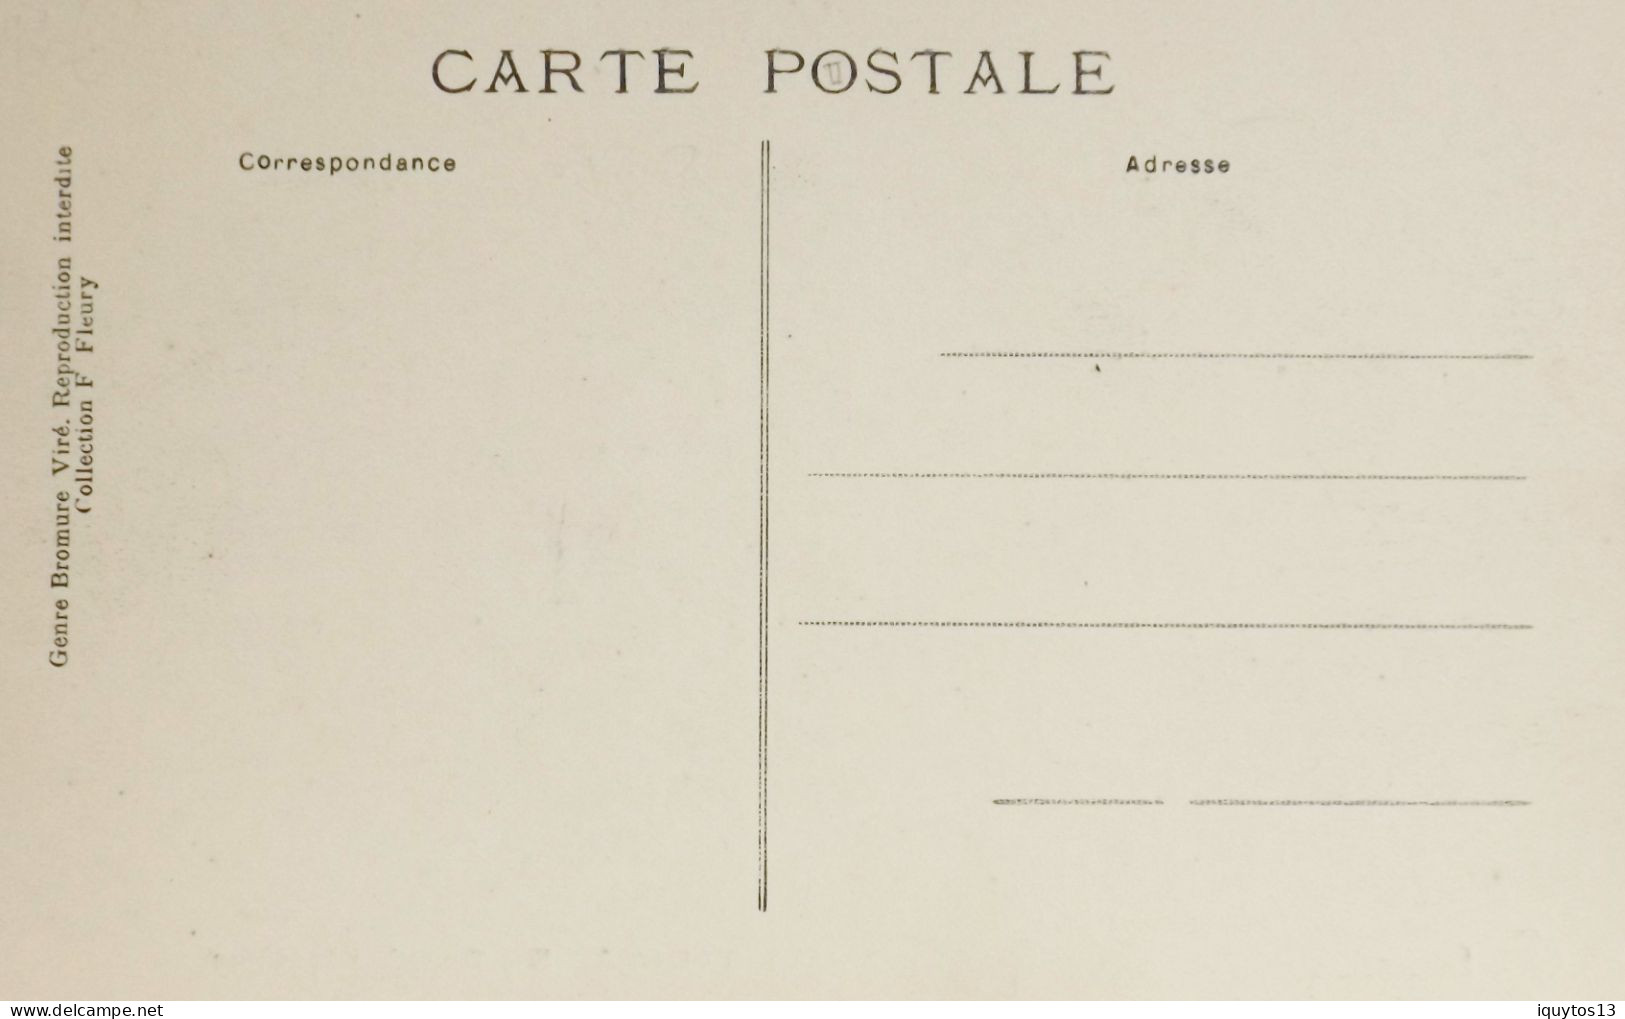 CPA. [75] > TOUT PARIS > N° 1380 - RUE D'ANGOULEME AU Bd. VOLTAIRE - (XIe Arrt.) - Coll. F. Fleury - TBE - Paris (11)